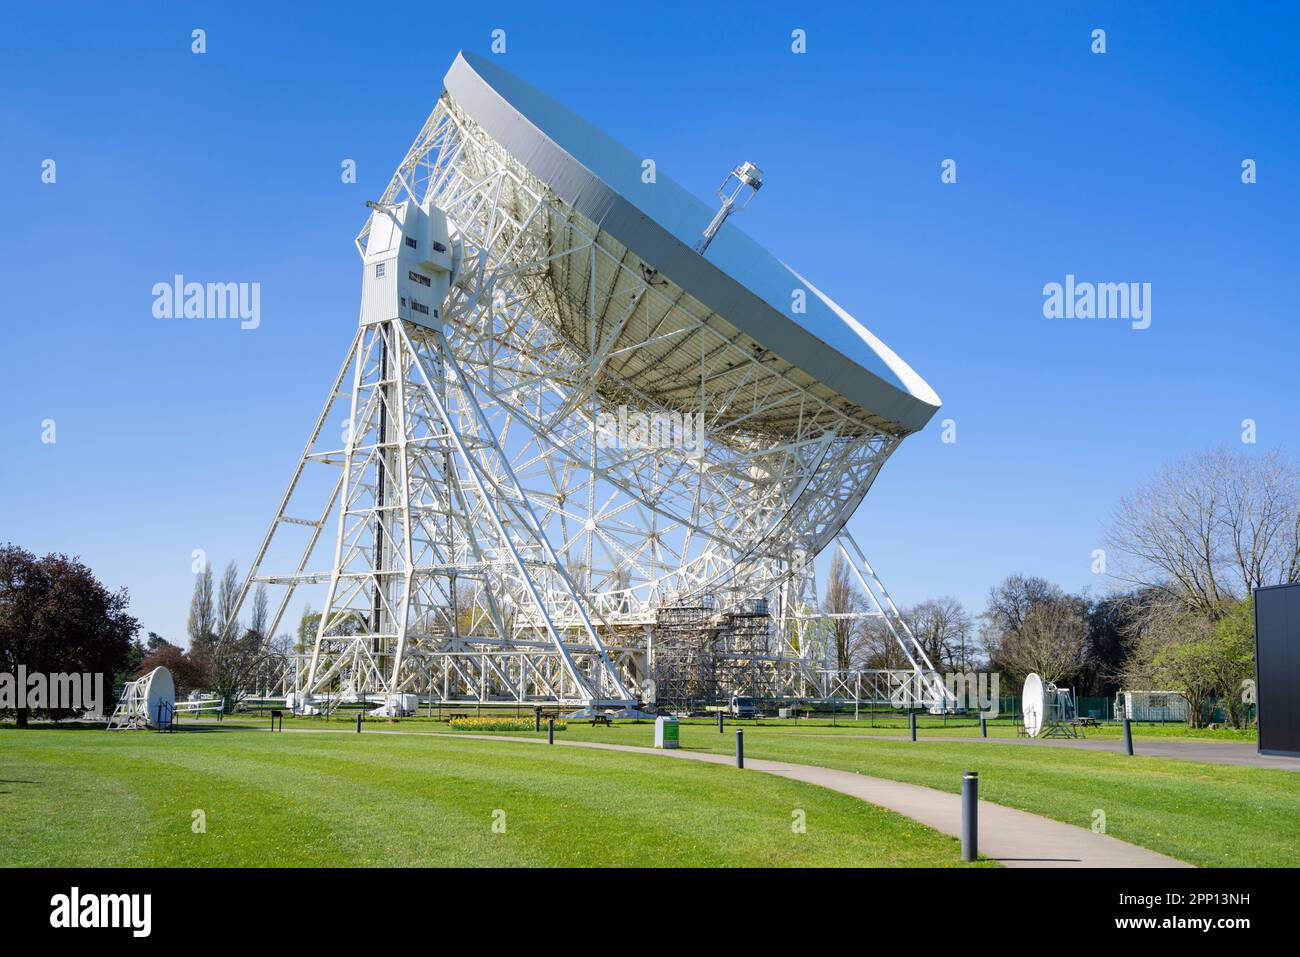 Radiotélescope Jodrell Bank, le télescope Lovell à l'observatoire de Jodrell Bank, banque Jodrell près de Lower Withington Cheshire Angleterre Royaume-Uni GB Europe Banque D'Images